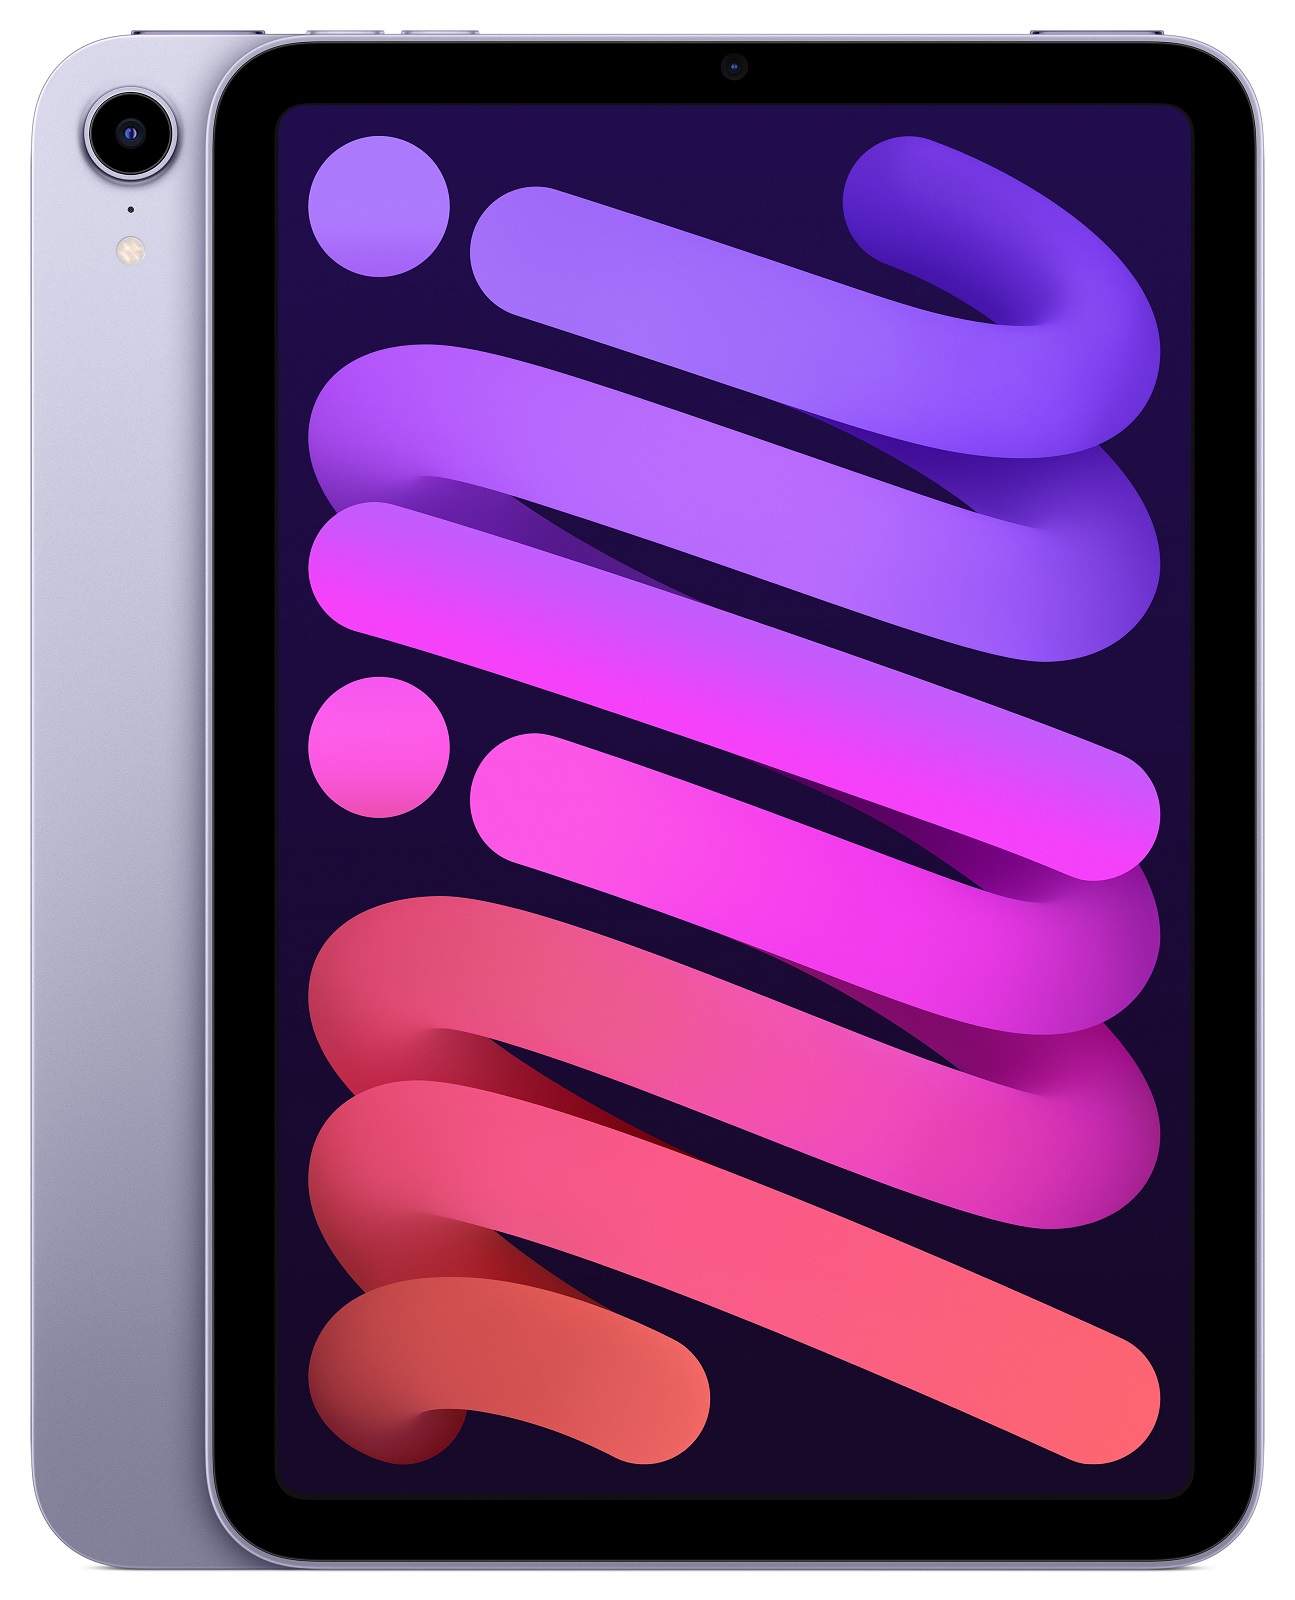 iPad mini Wi-Fi 64GB Purple (2021)